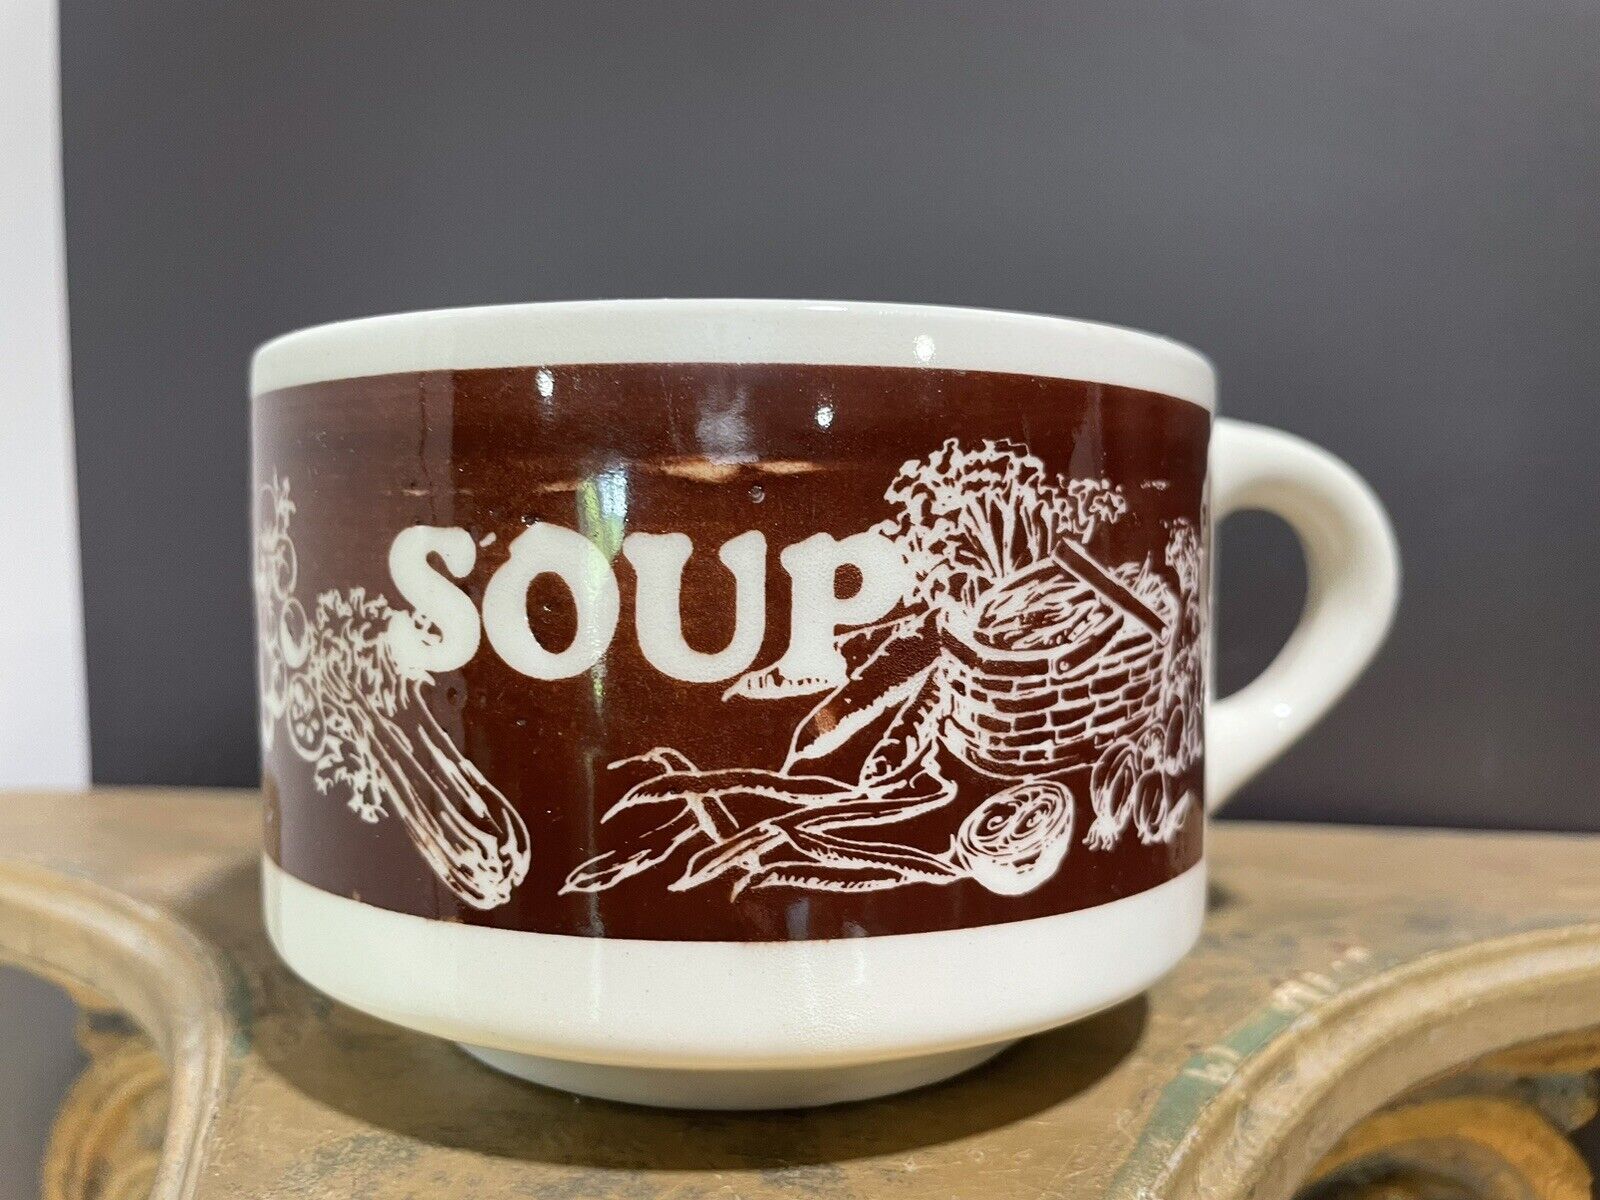 USA Pottery Stoneware MCM Handled Soup Mug Bowl Vegetables Brown on Cream